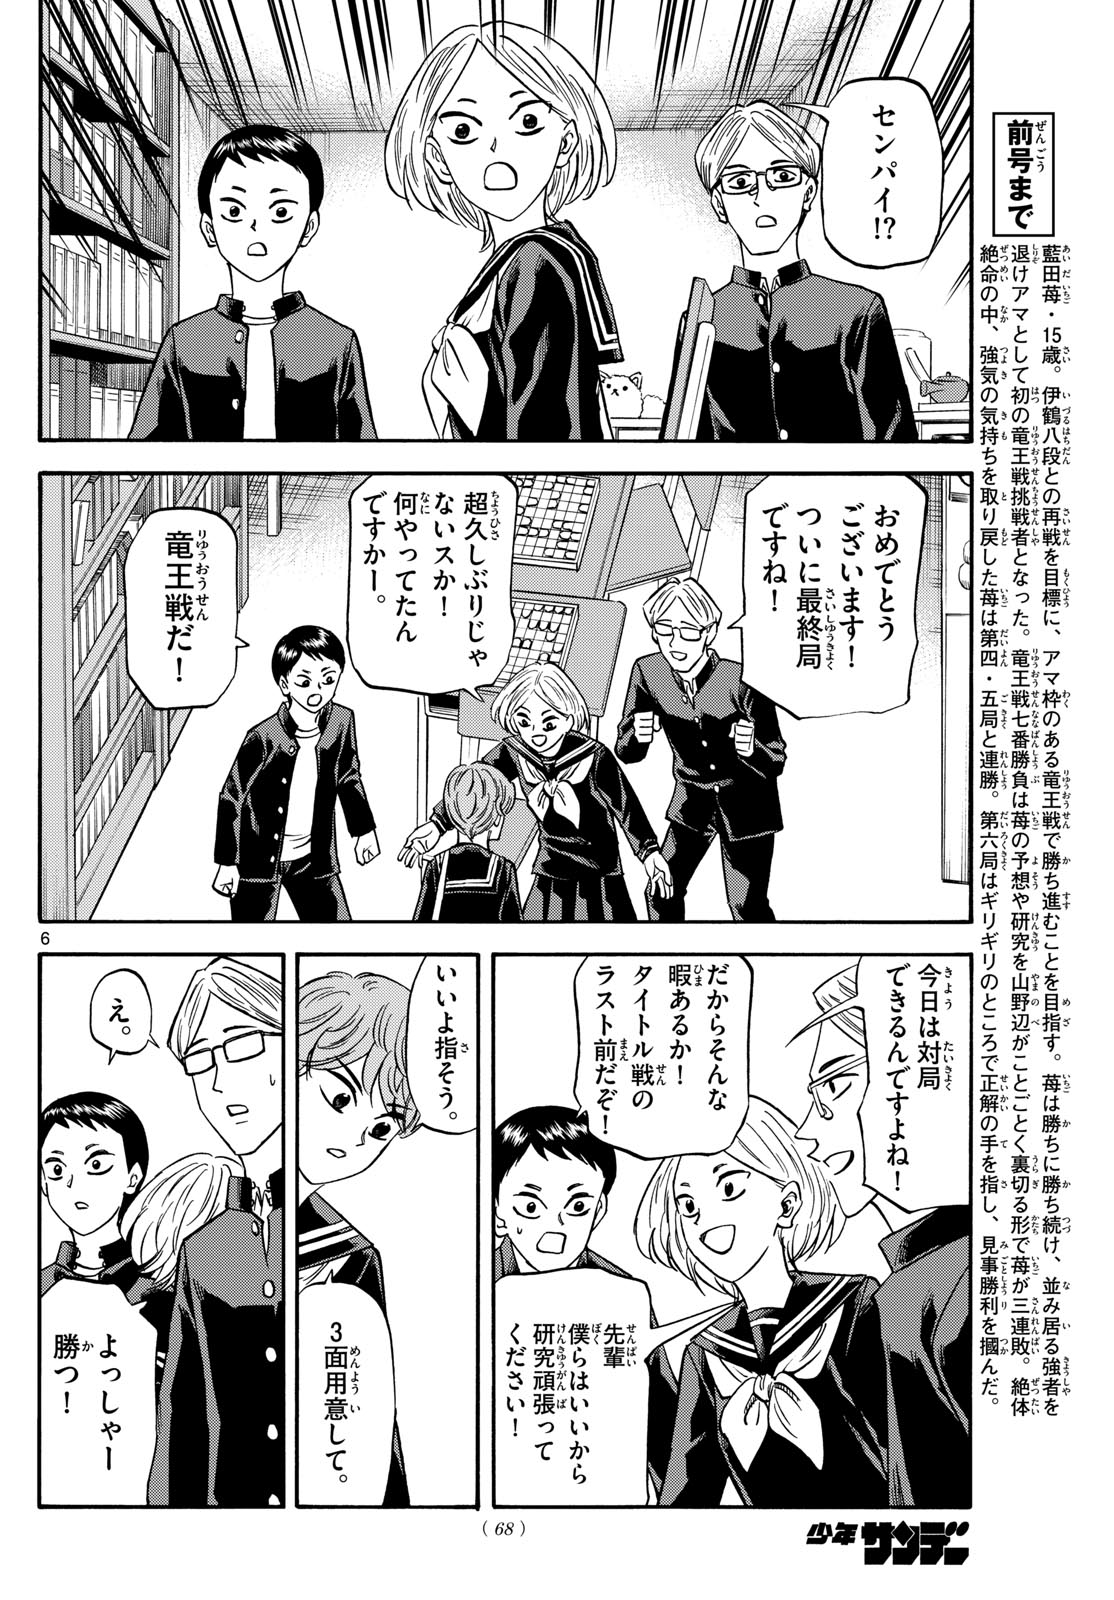 Tatsu to Ichigo - Chapter 171 - Page 6